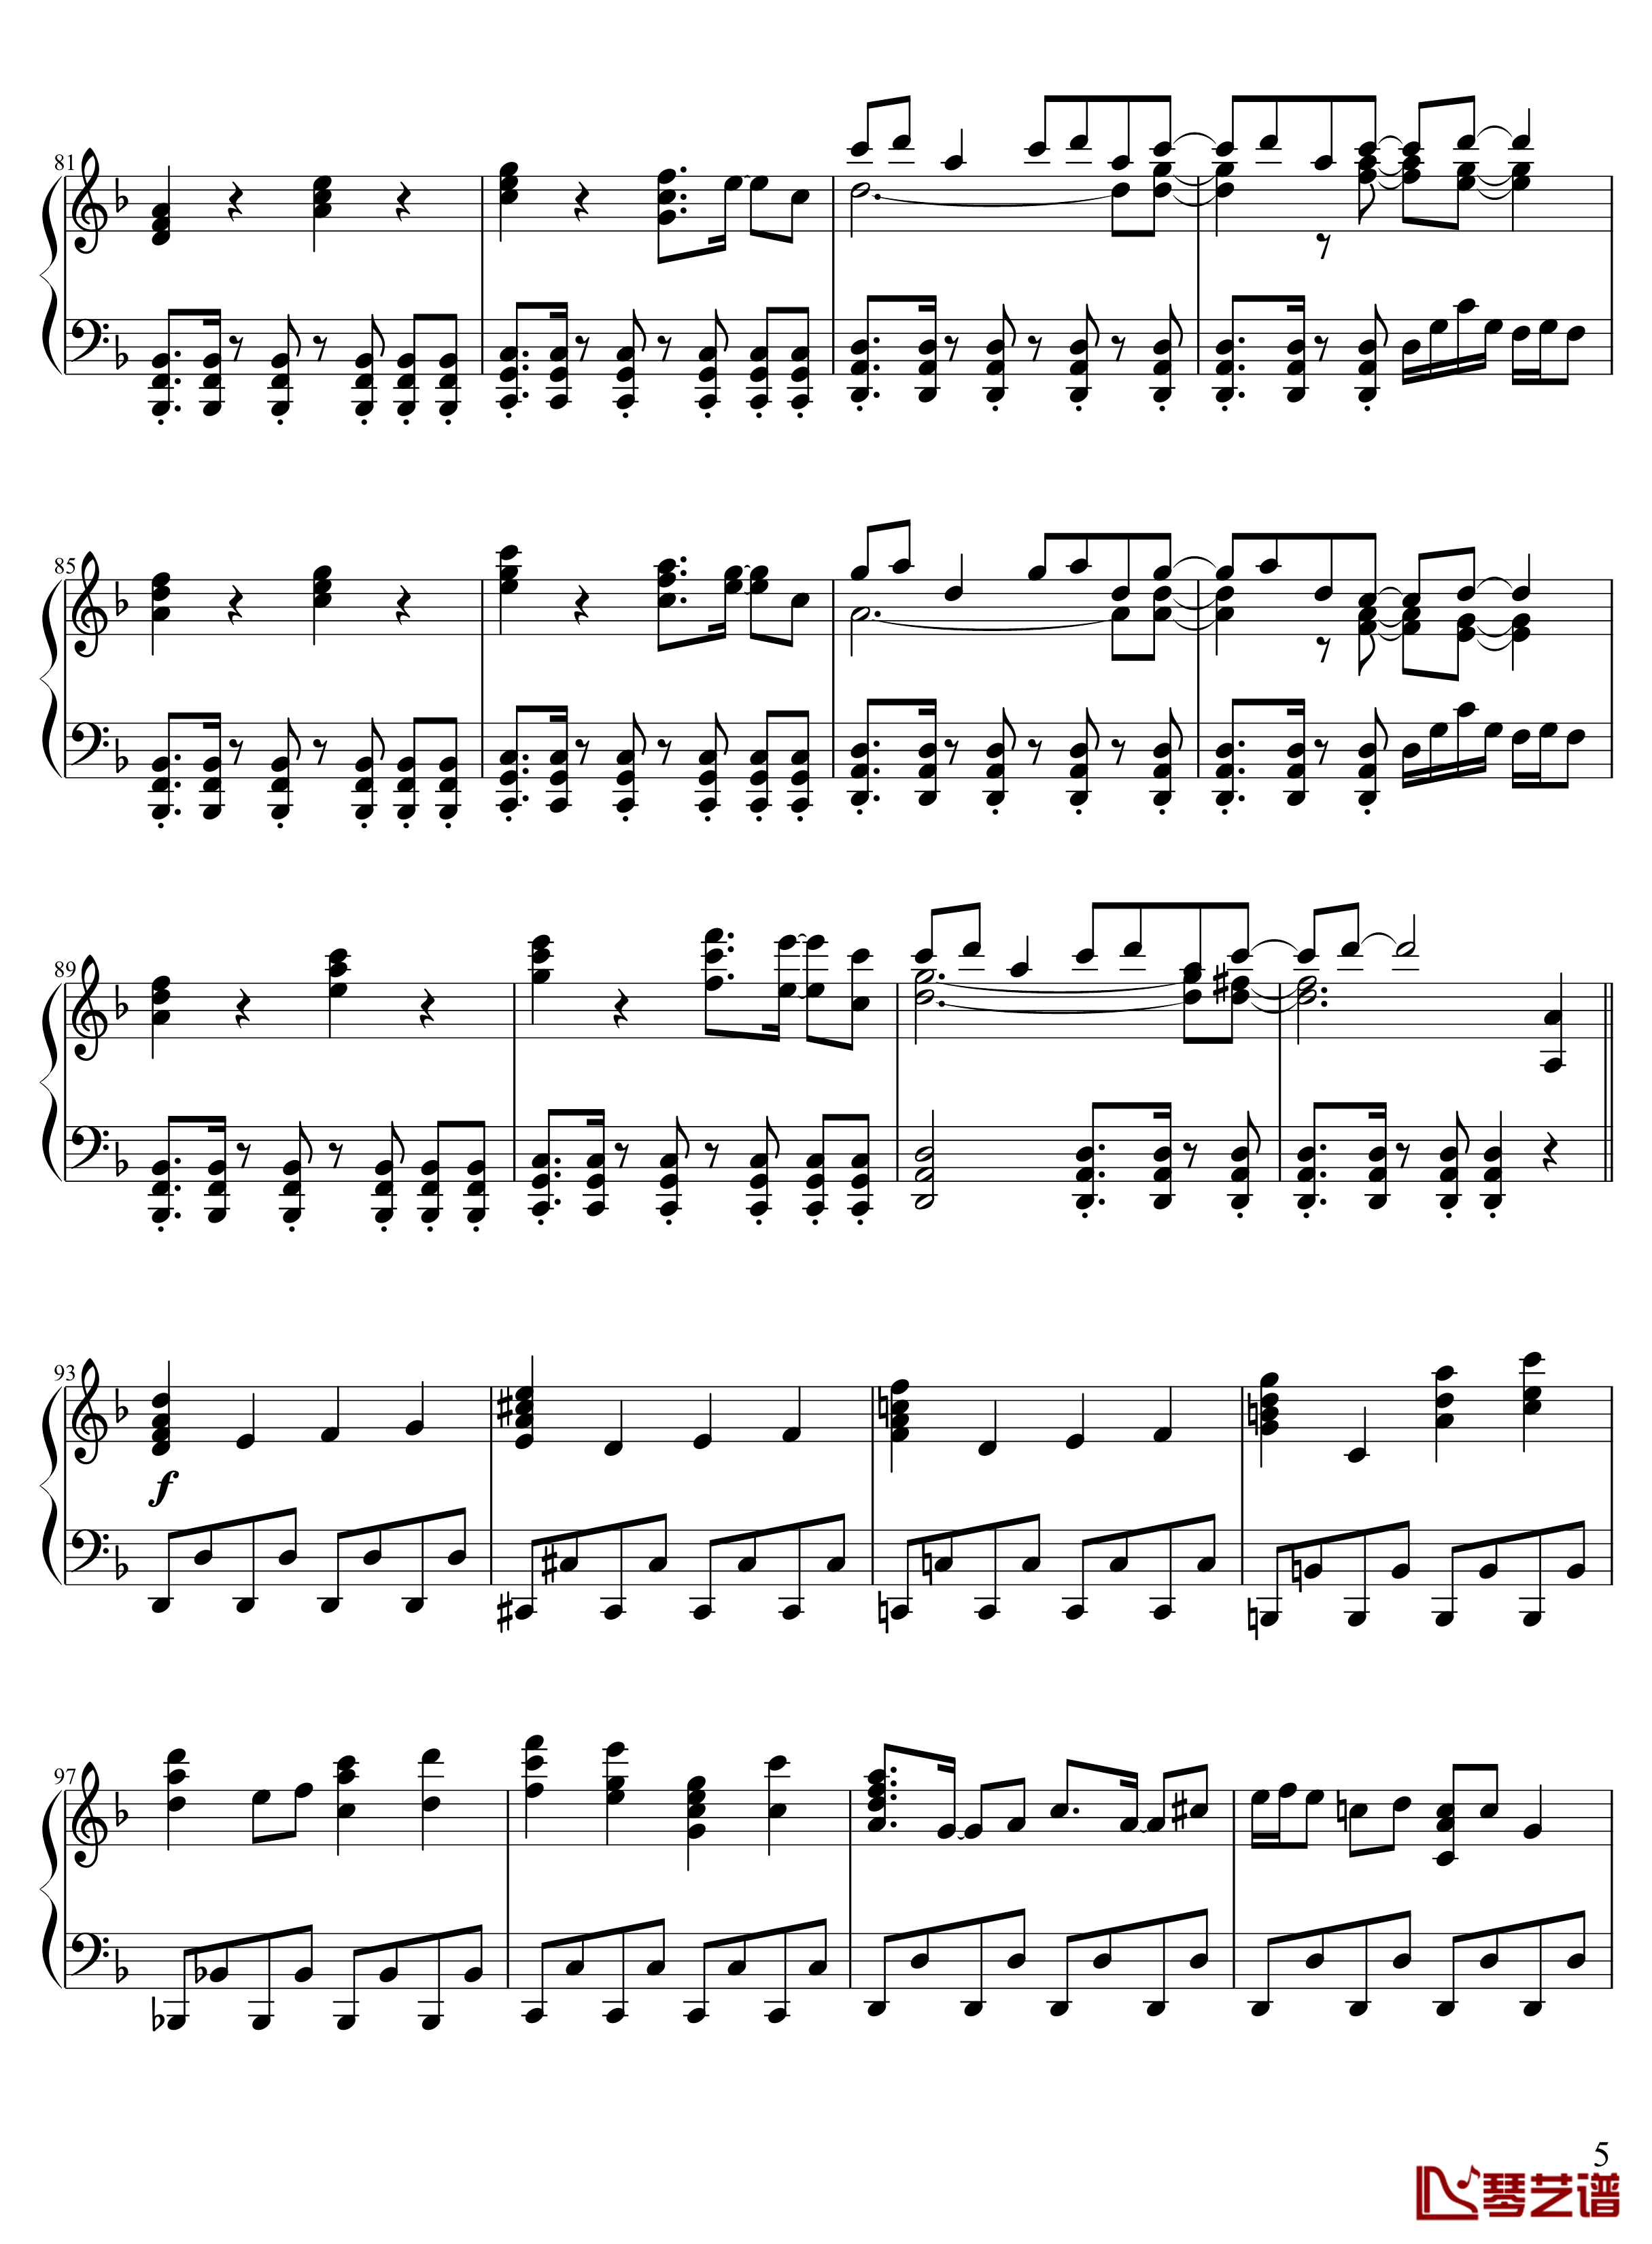 13 ピュアヒューリーズ钢琴谱- 心の在処-zun